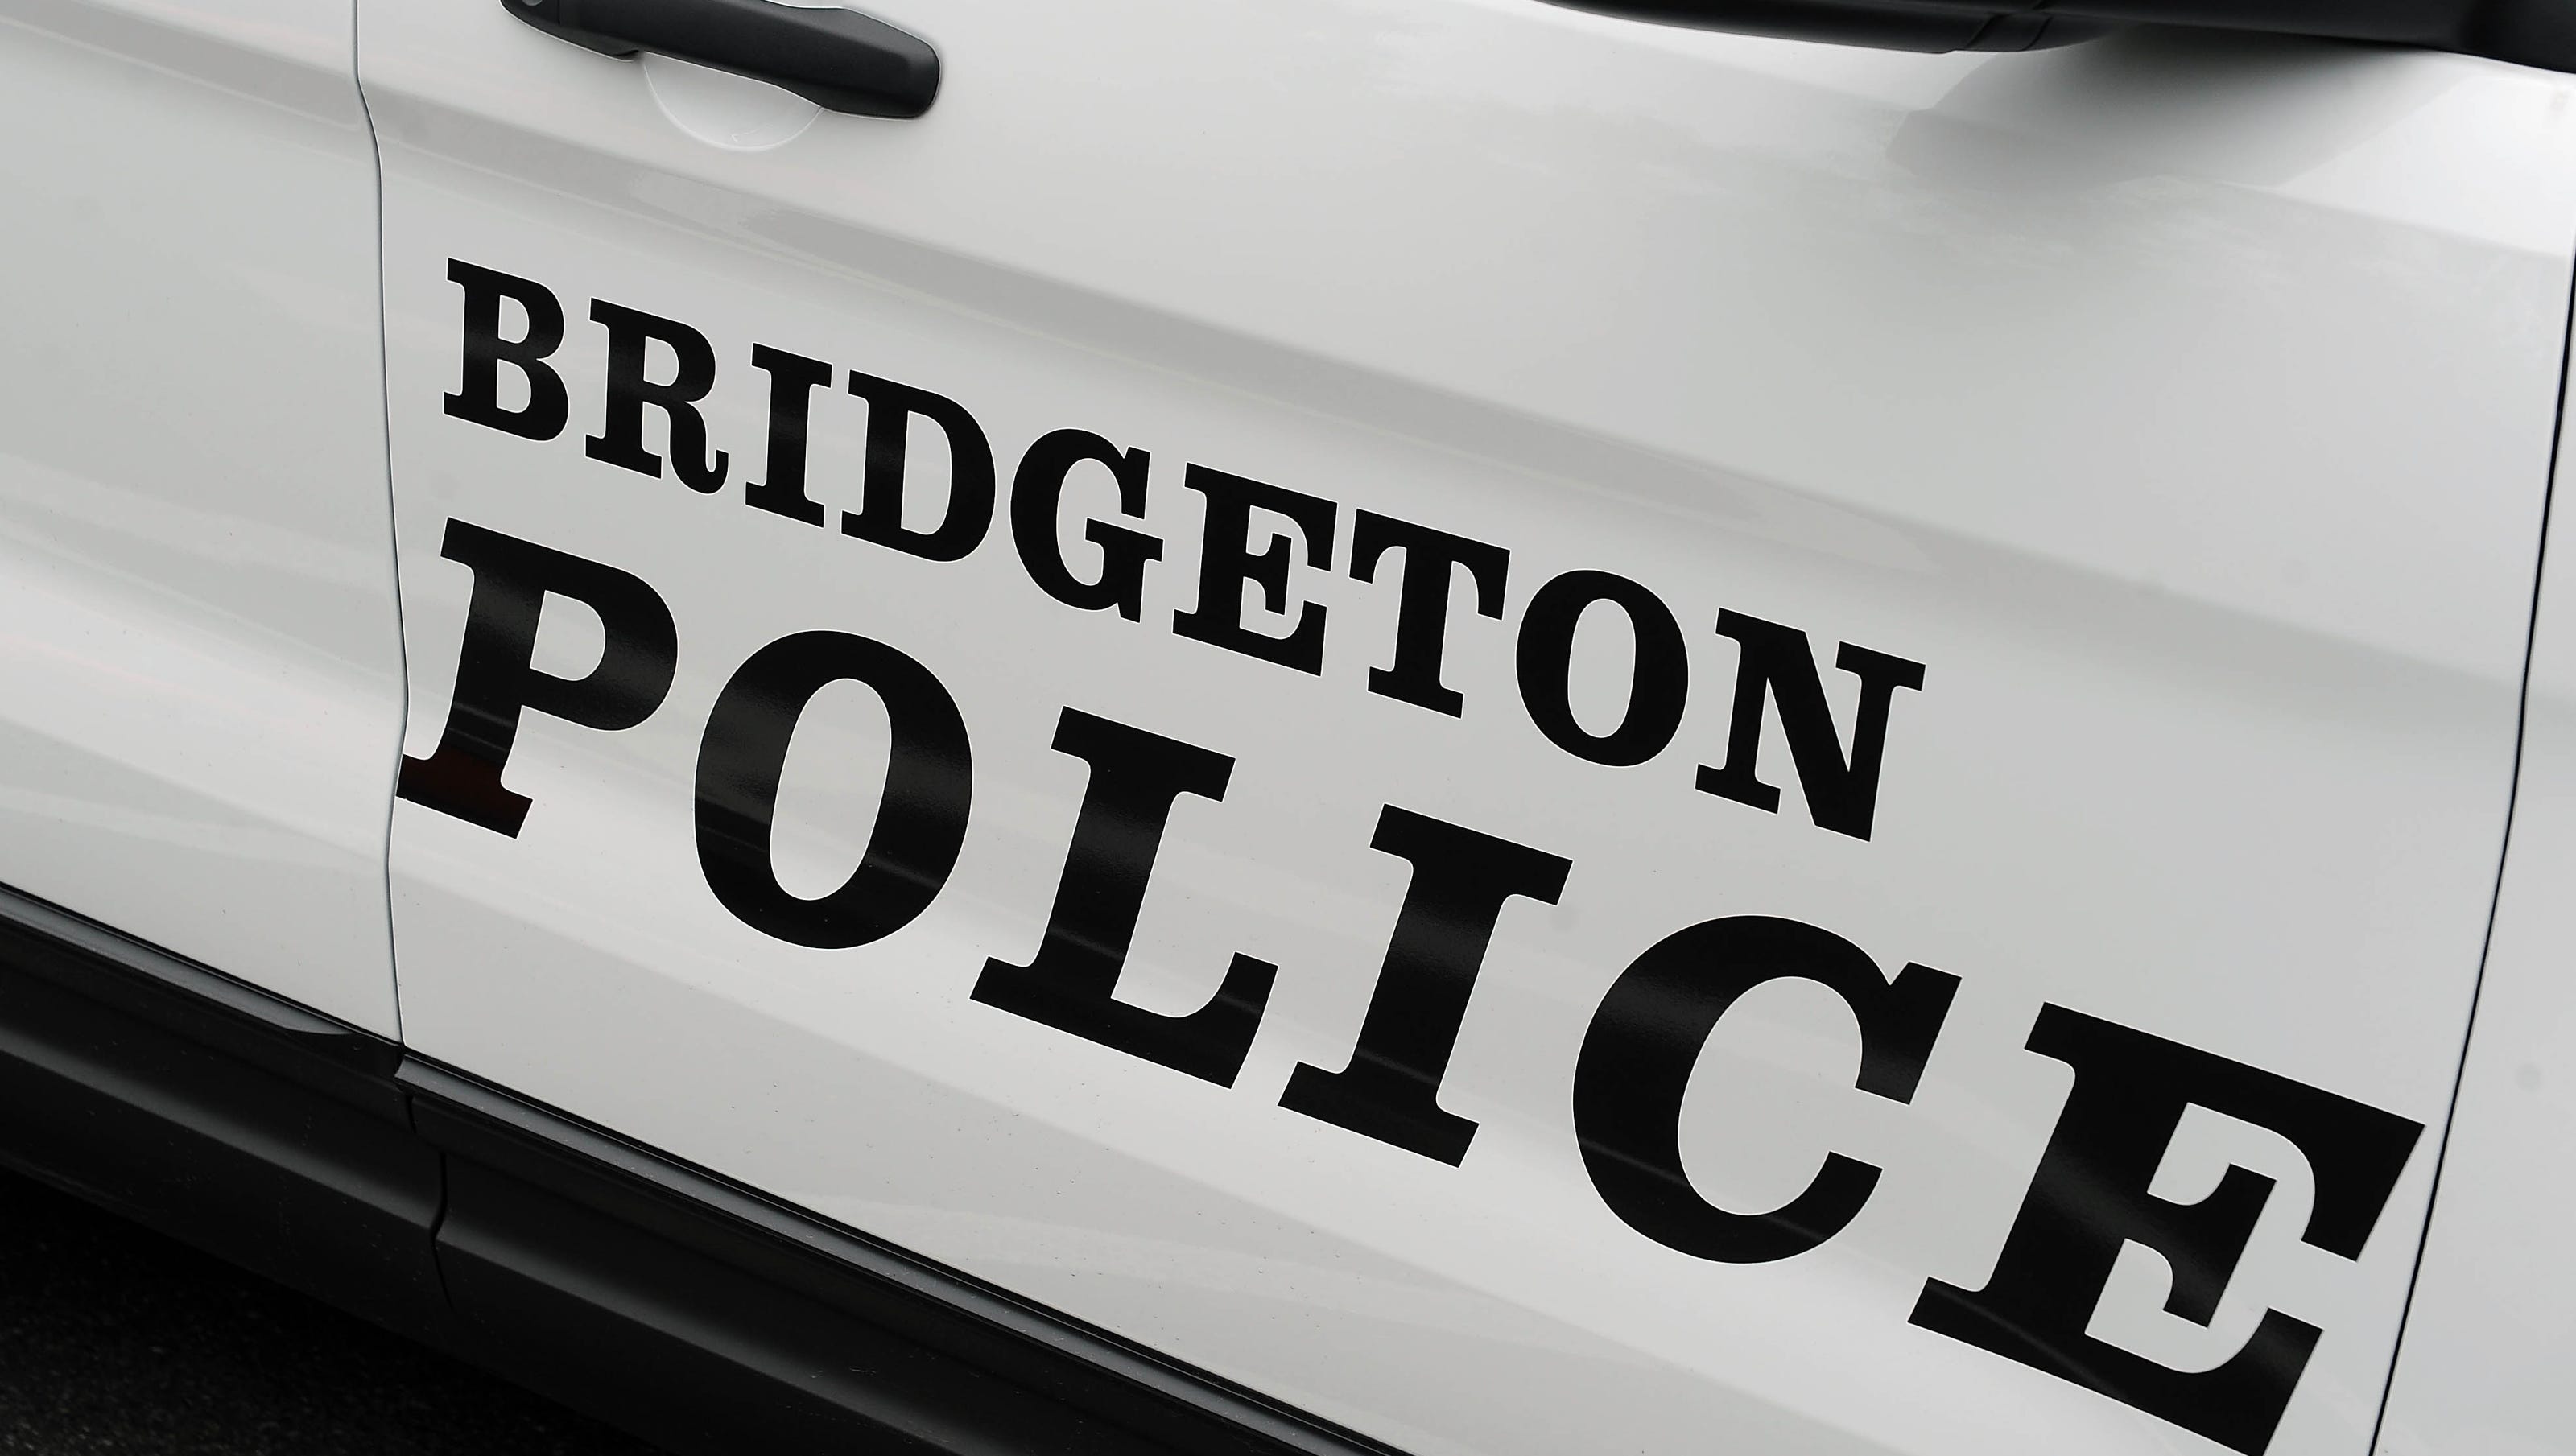 Bridgeton police for Sept 14